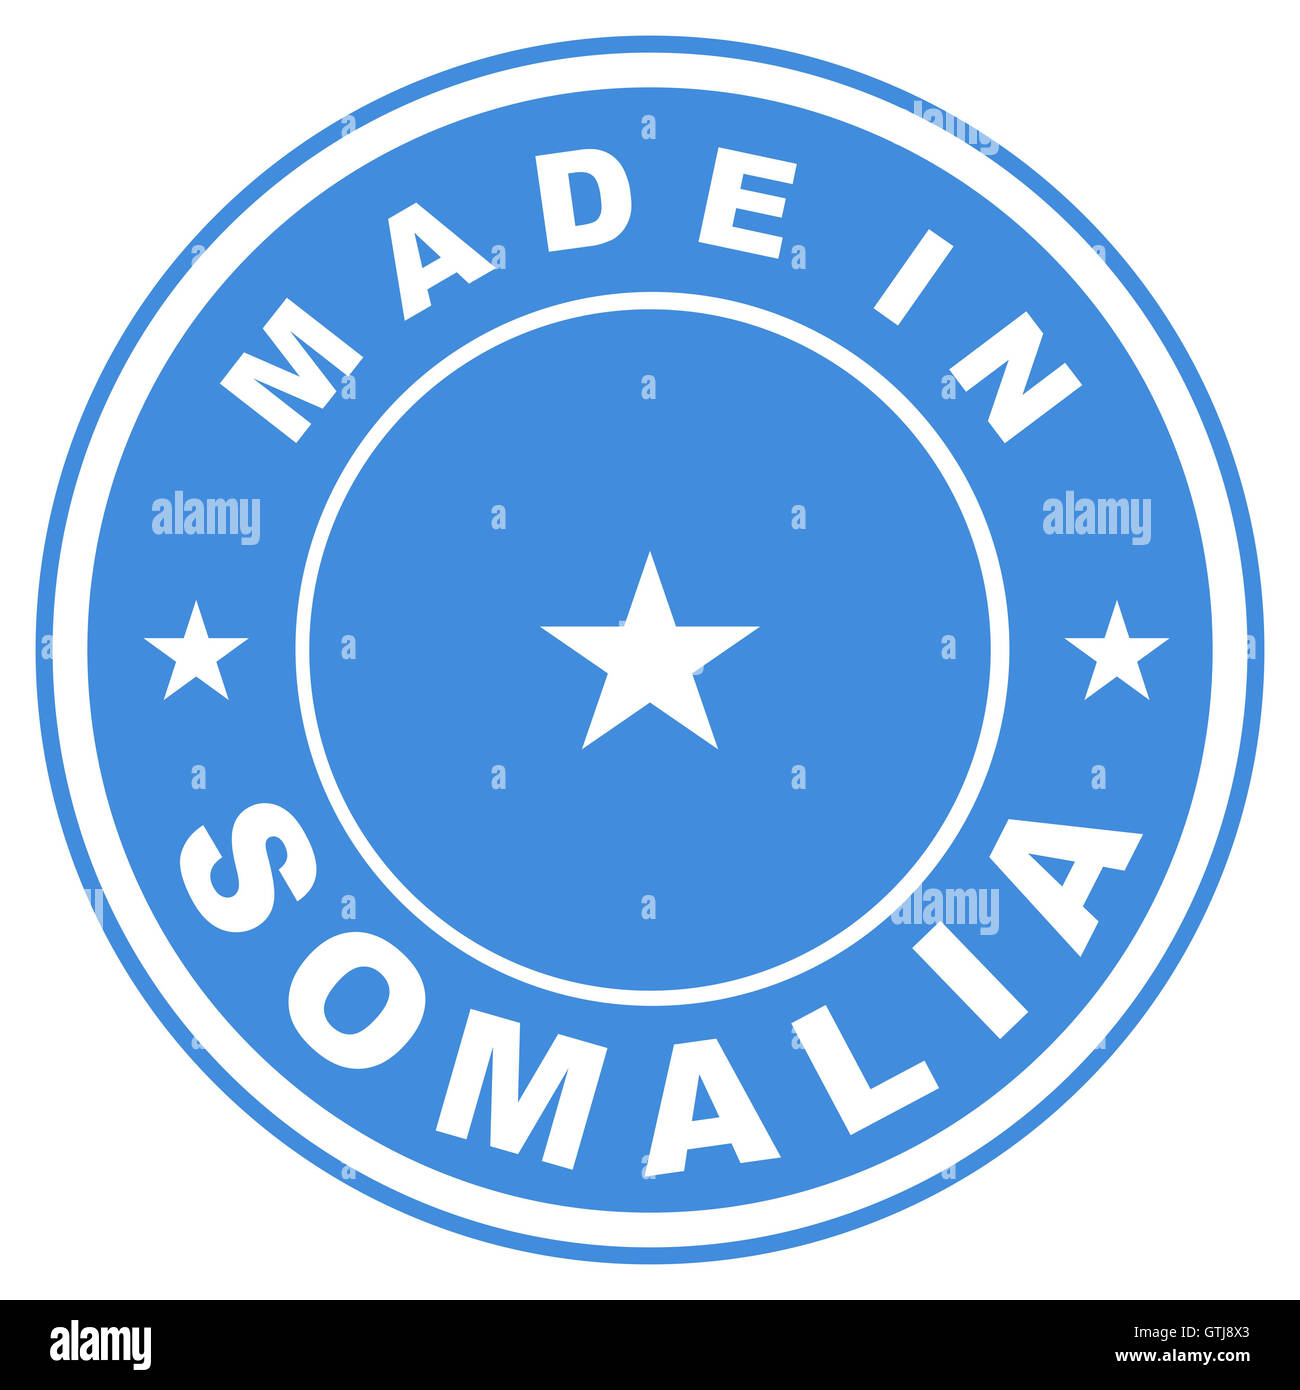 made in somalia Stock Photo